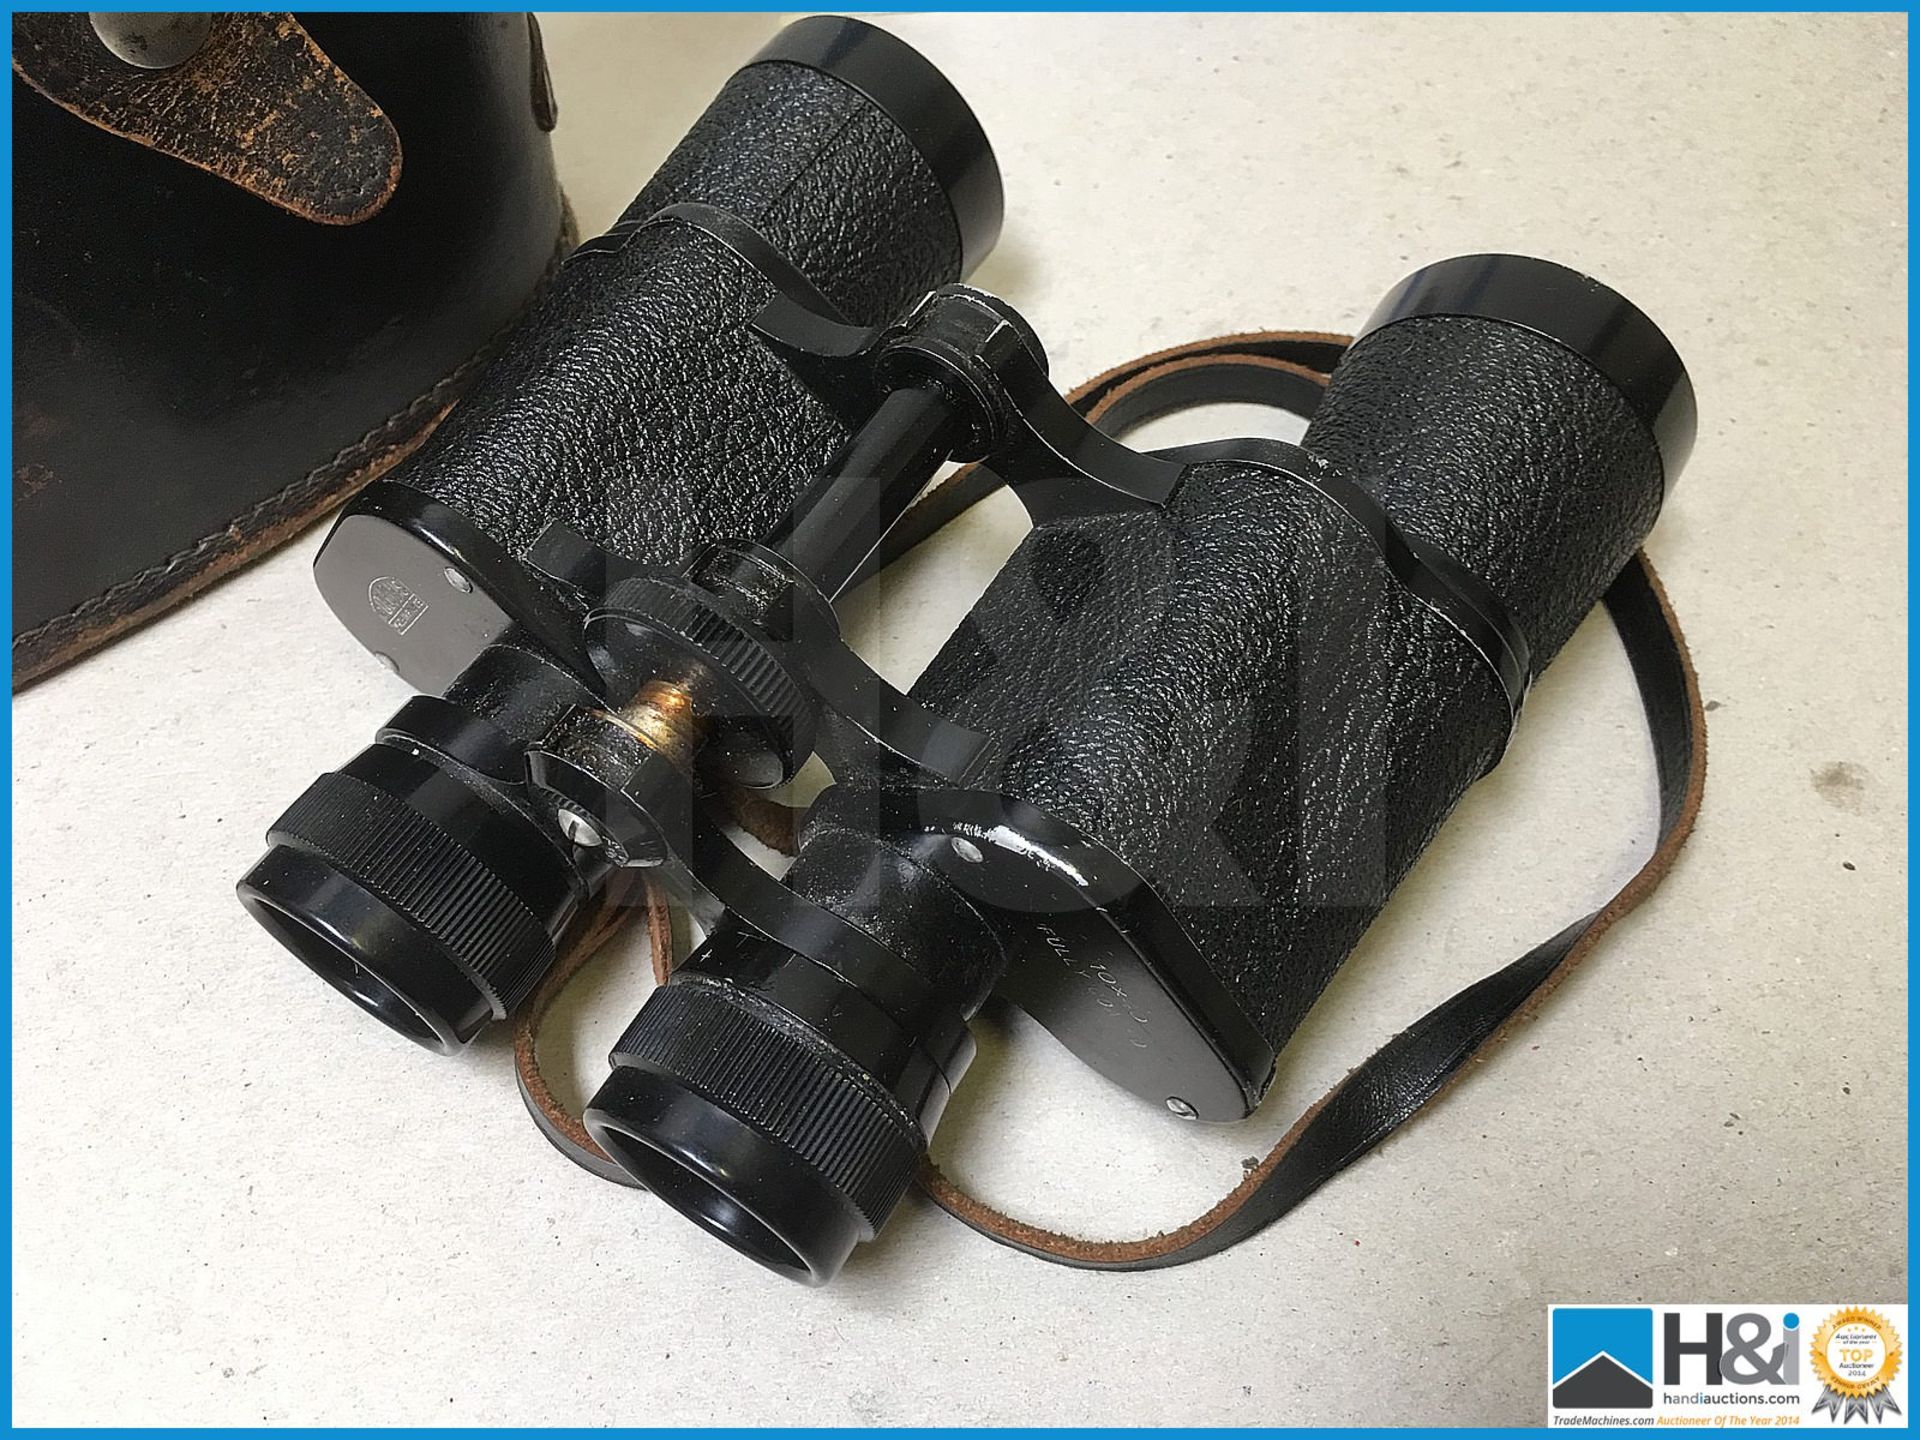 Vintage binoculars. - Image 2 of 4